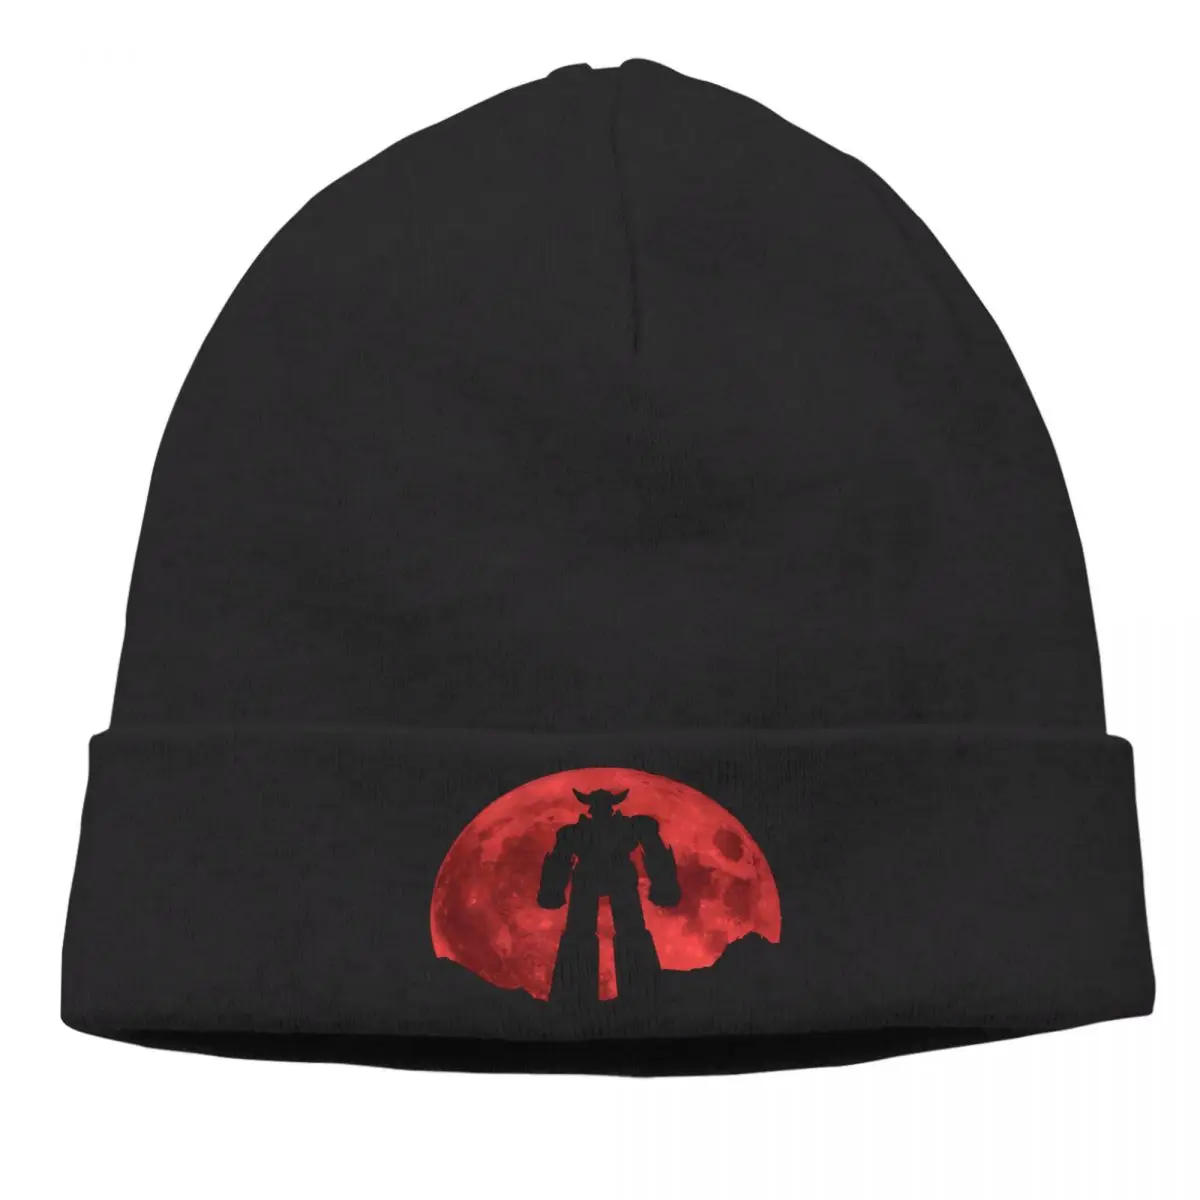 

Мужская шапочка Red Moon, вязаная шапка для улицы, НЛО, робот, греназур, Hero, аниме шапочки, облегающие шапки, креативные тканевые шапки